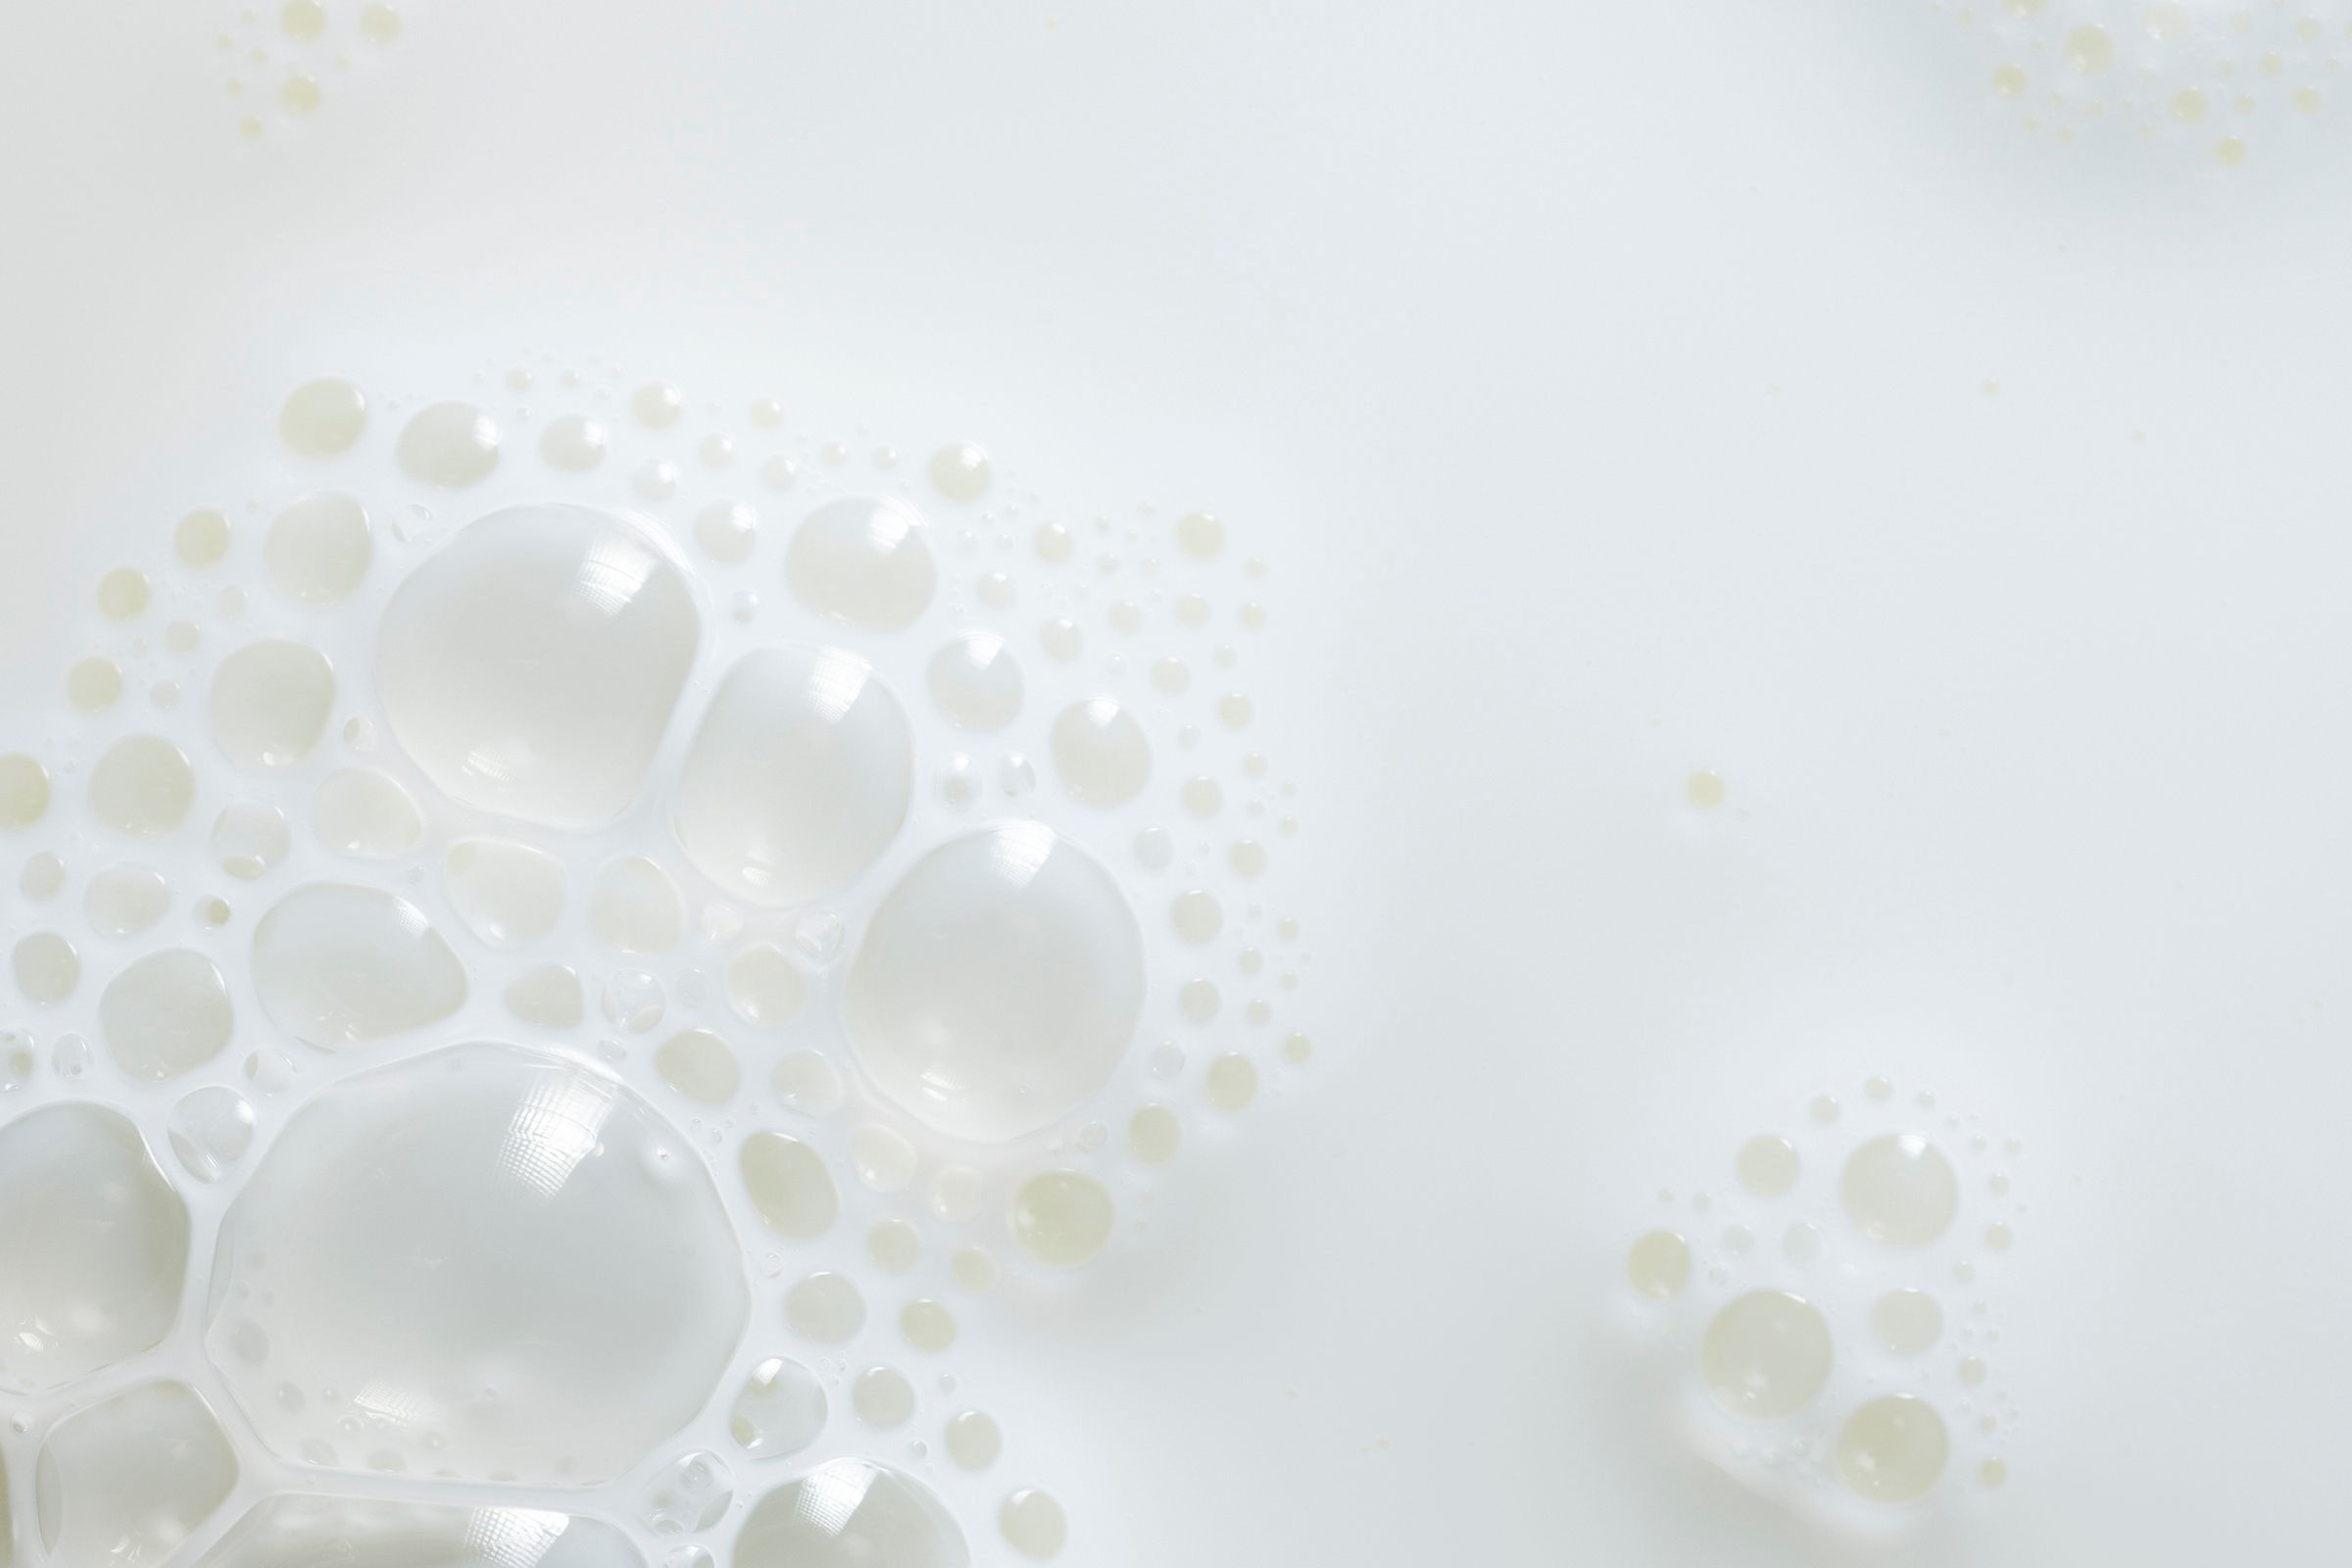 Laktos och mjölkprotein - vad är skillnaden? 